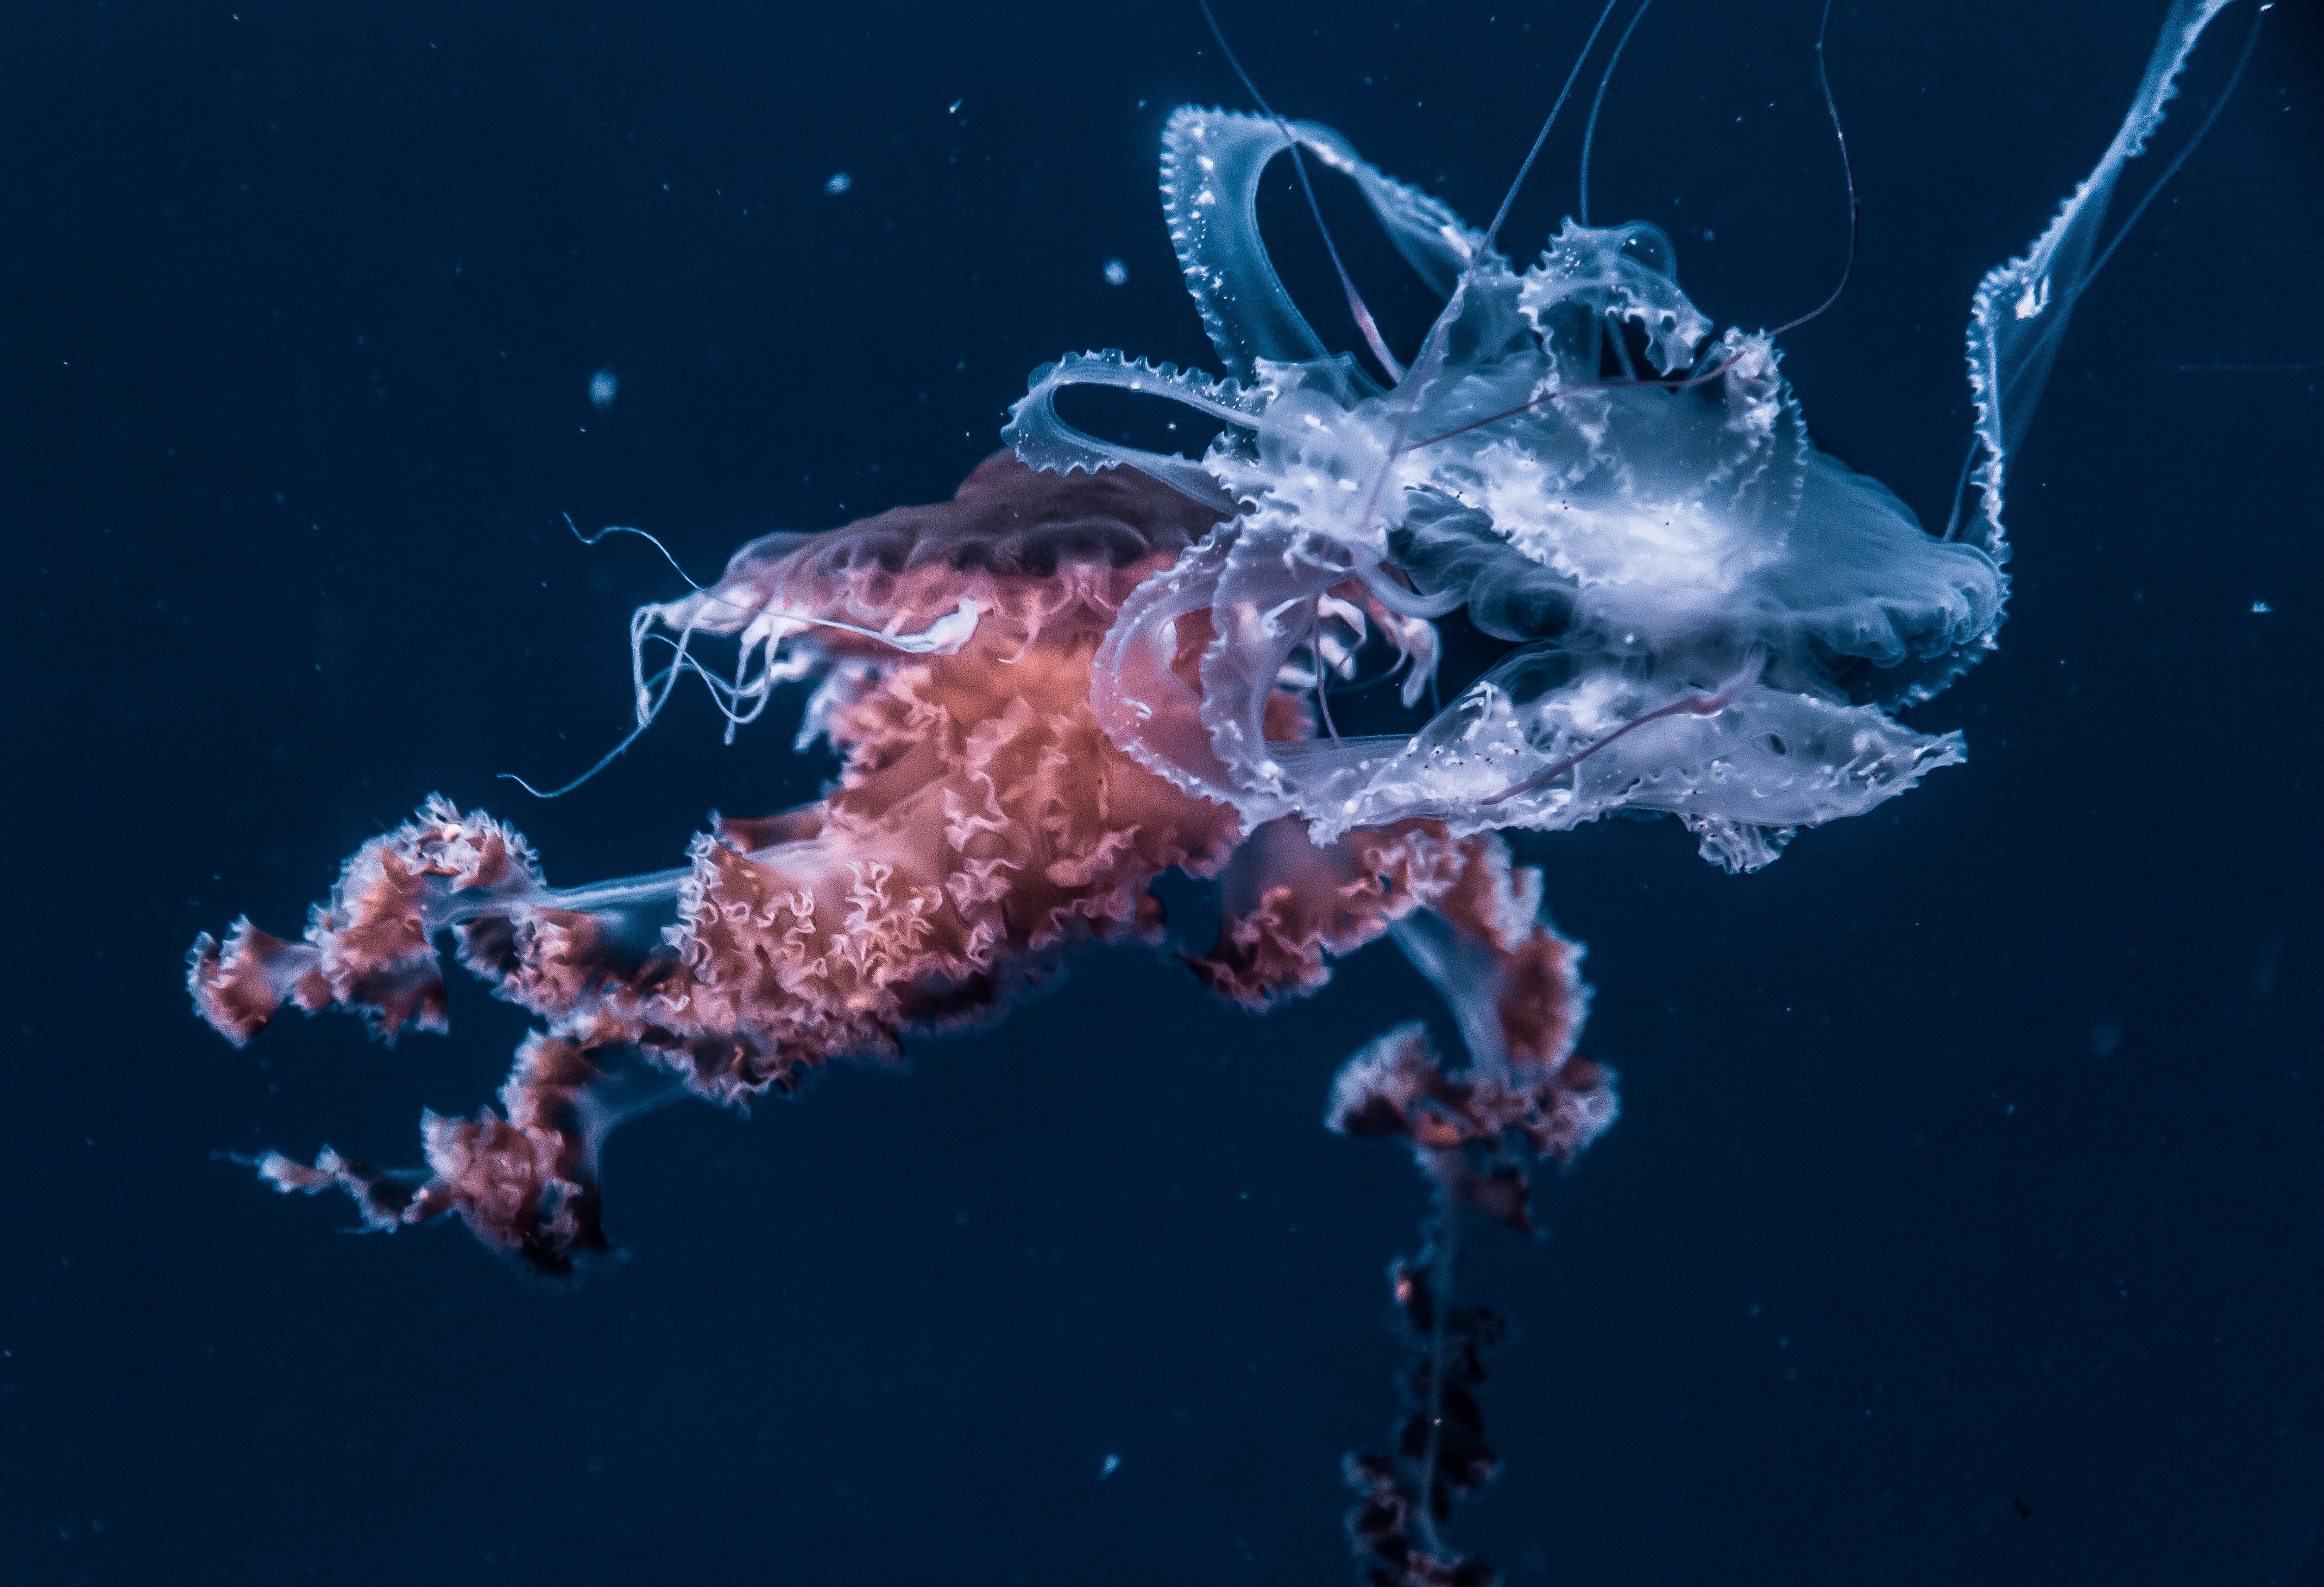 animals, jellyfish, ocean, underwater world, tentacles